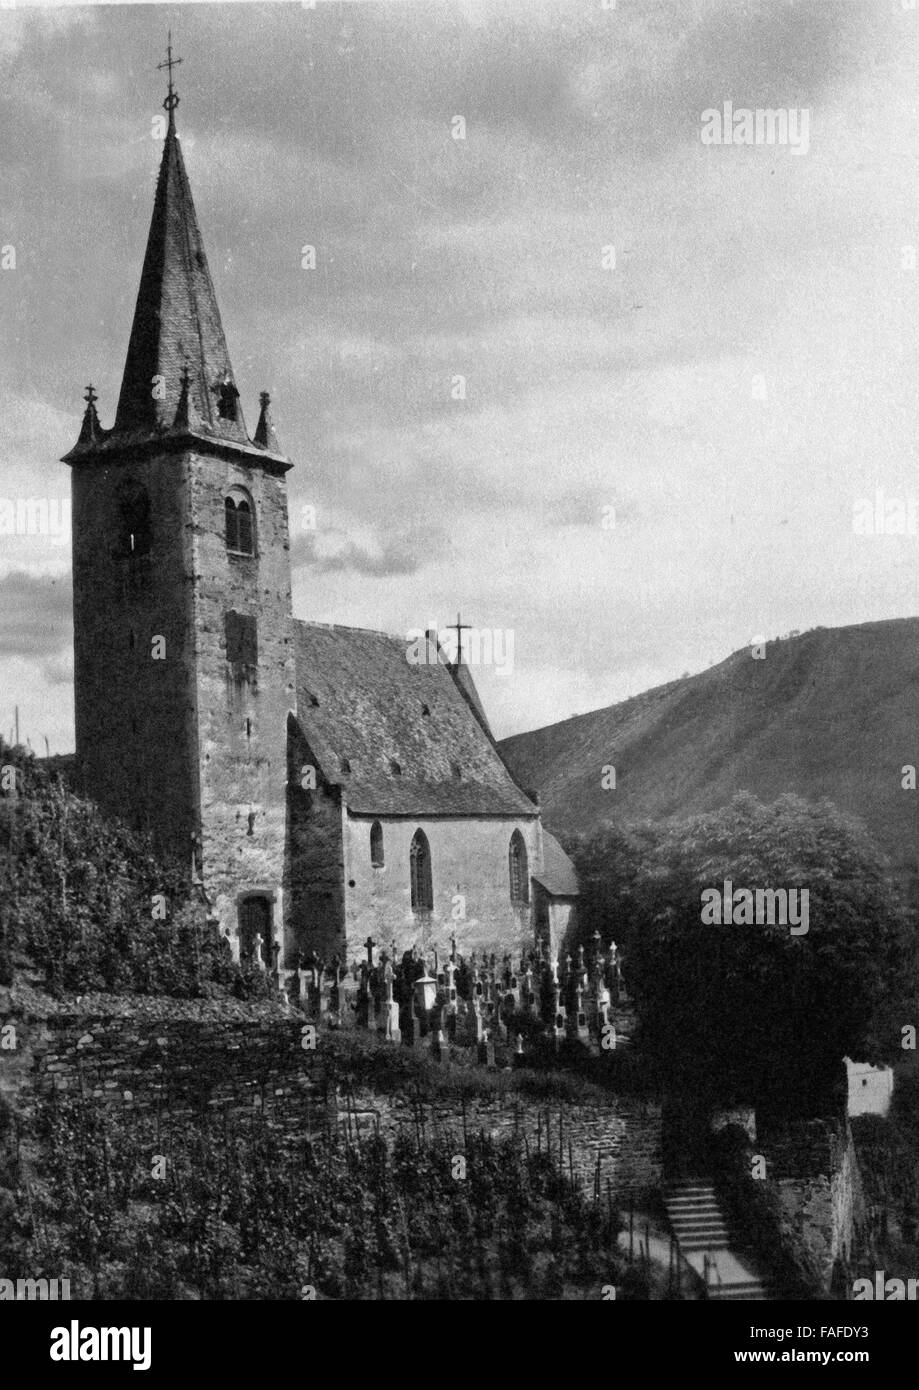 Johanneskirche Die in den Weinbergen um Hatzenport an der Mosel, Deutschland 1930 er Jahre. St John's Church dans le vignoble autour de Hatzenport sur Moselle, Allemagne 1930. Banque D'Images